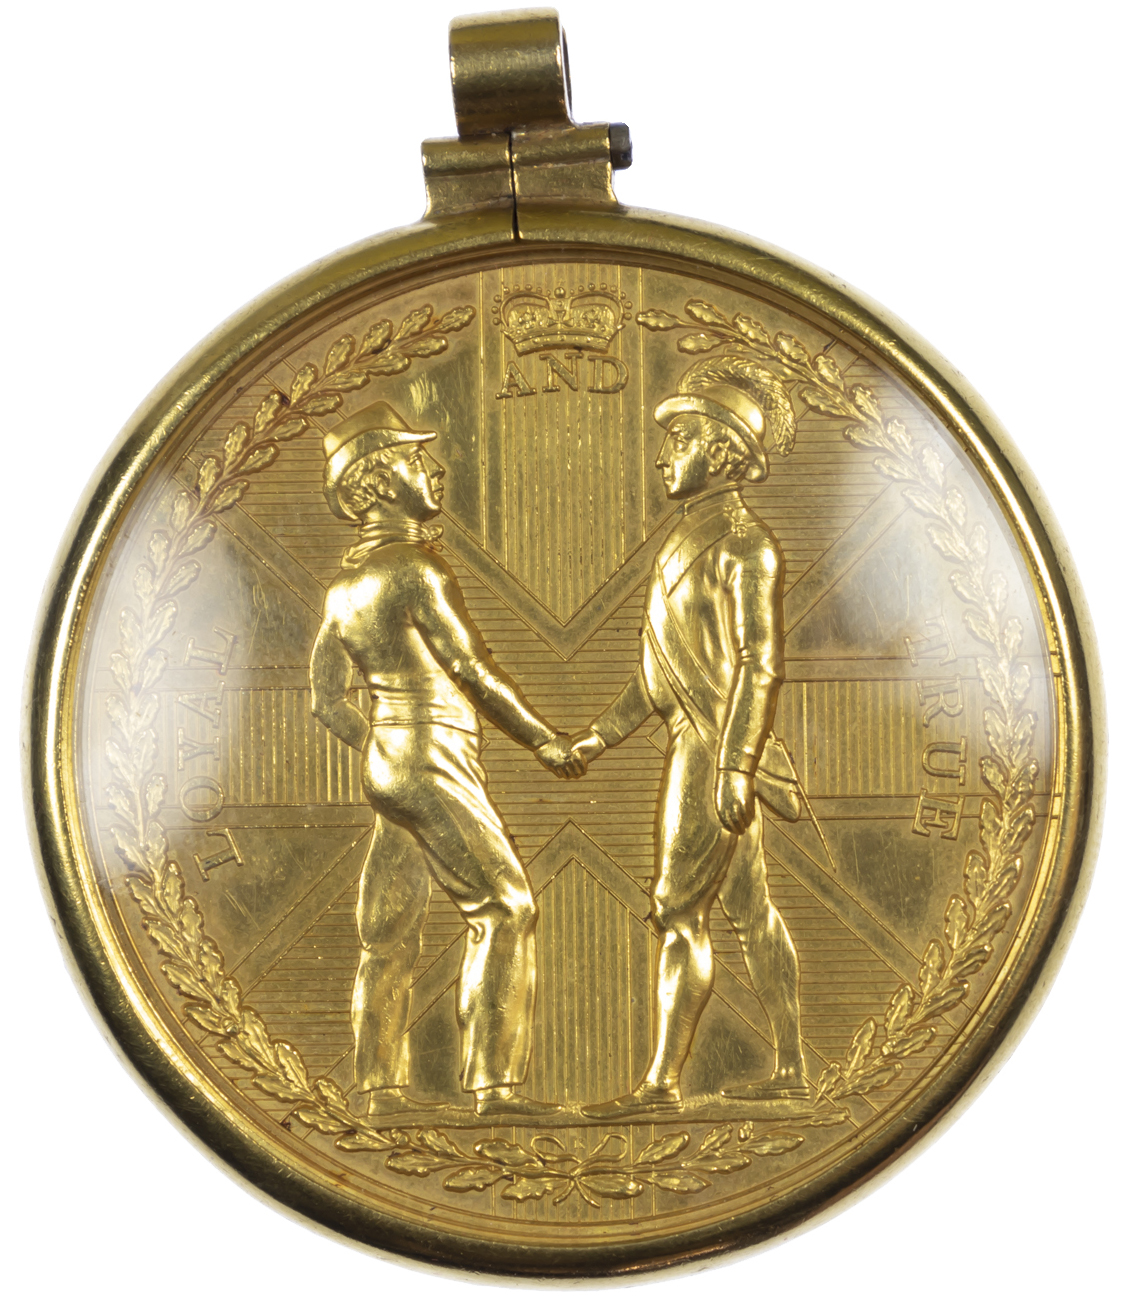 George III, Earl St. Vincent’s Reward, Gold Medal, 1800